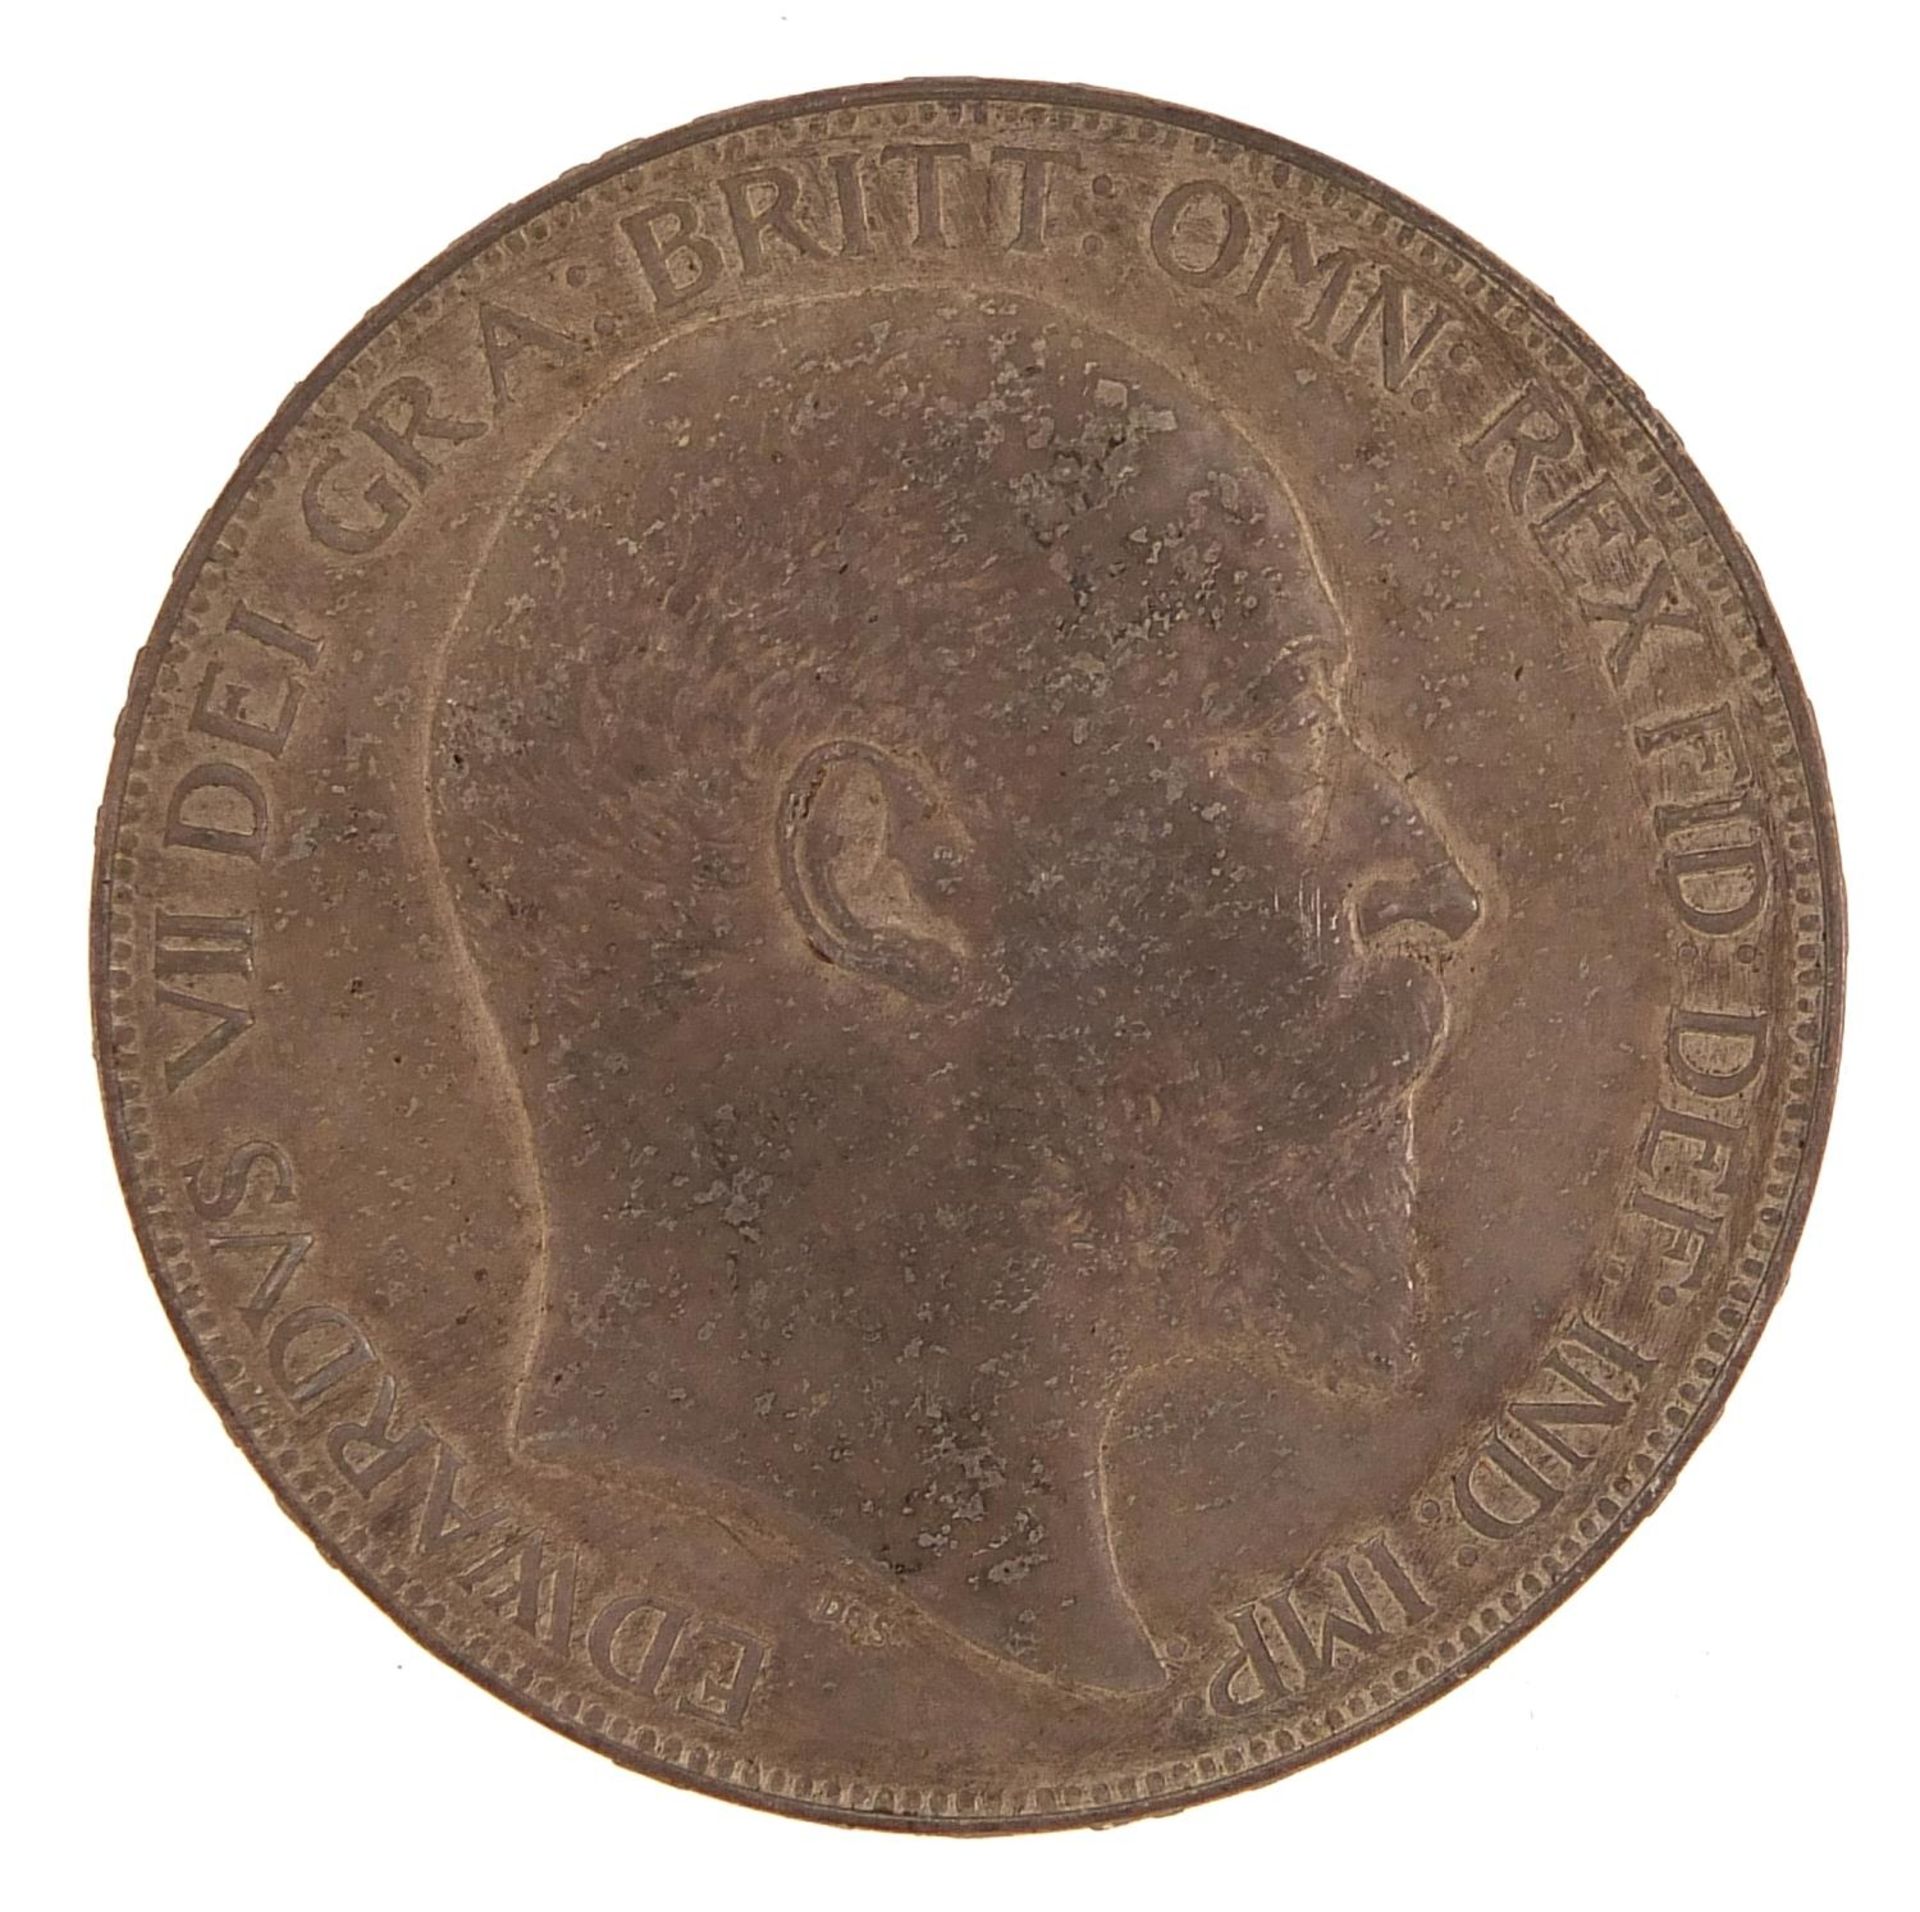 Edward VII 1902 crown - Image 2 of 3